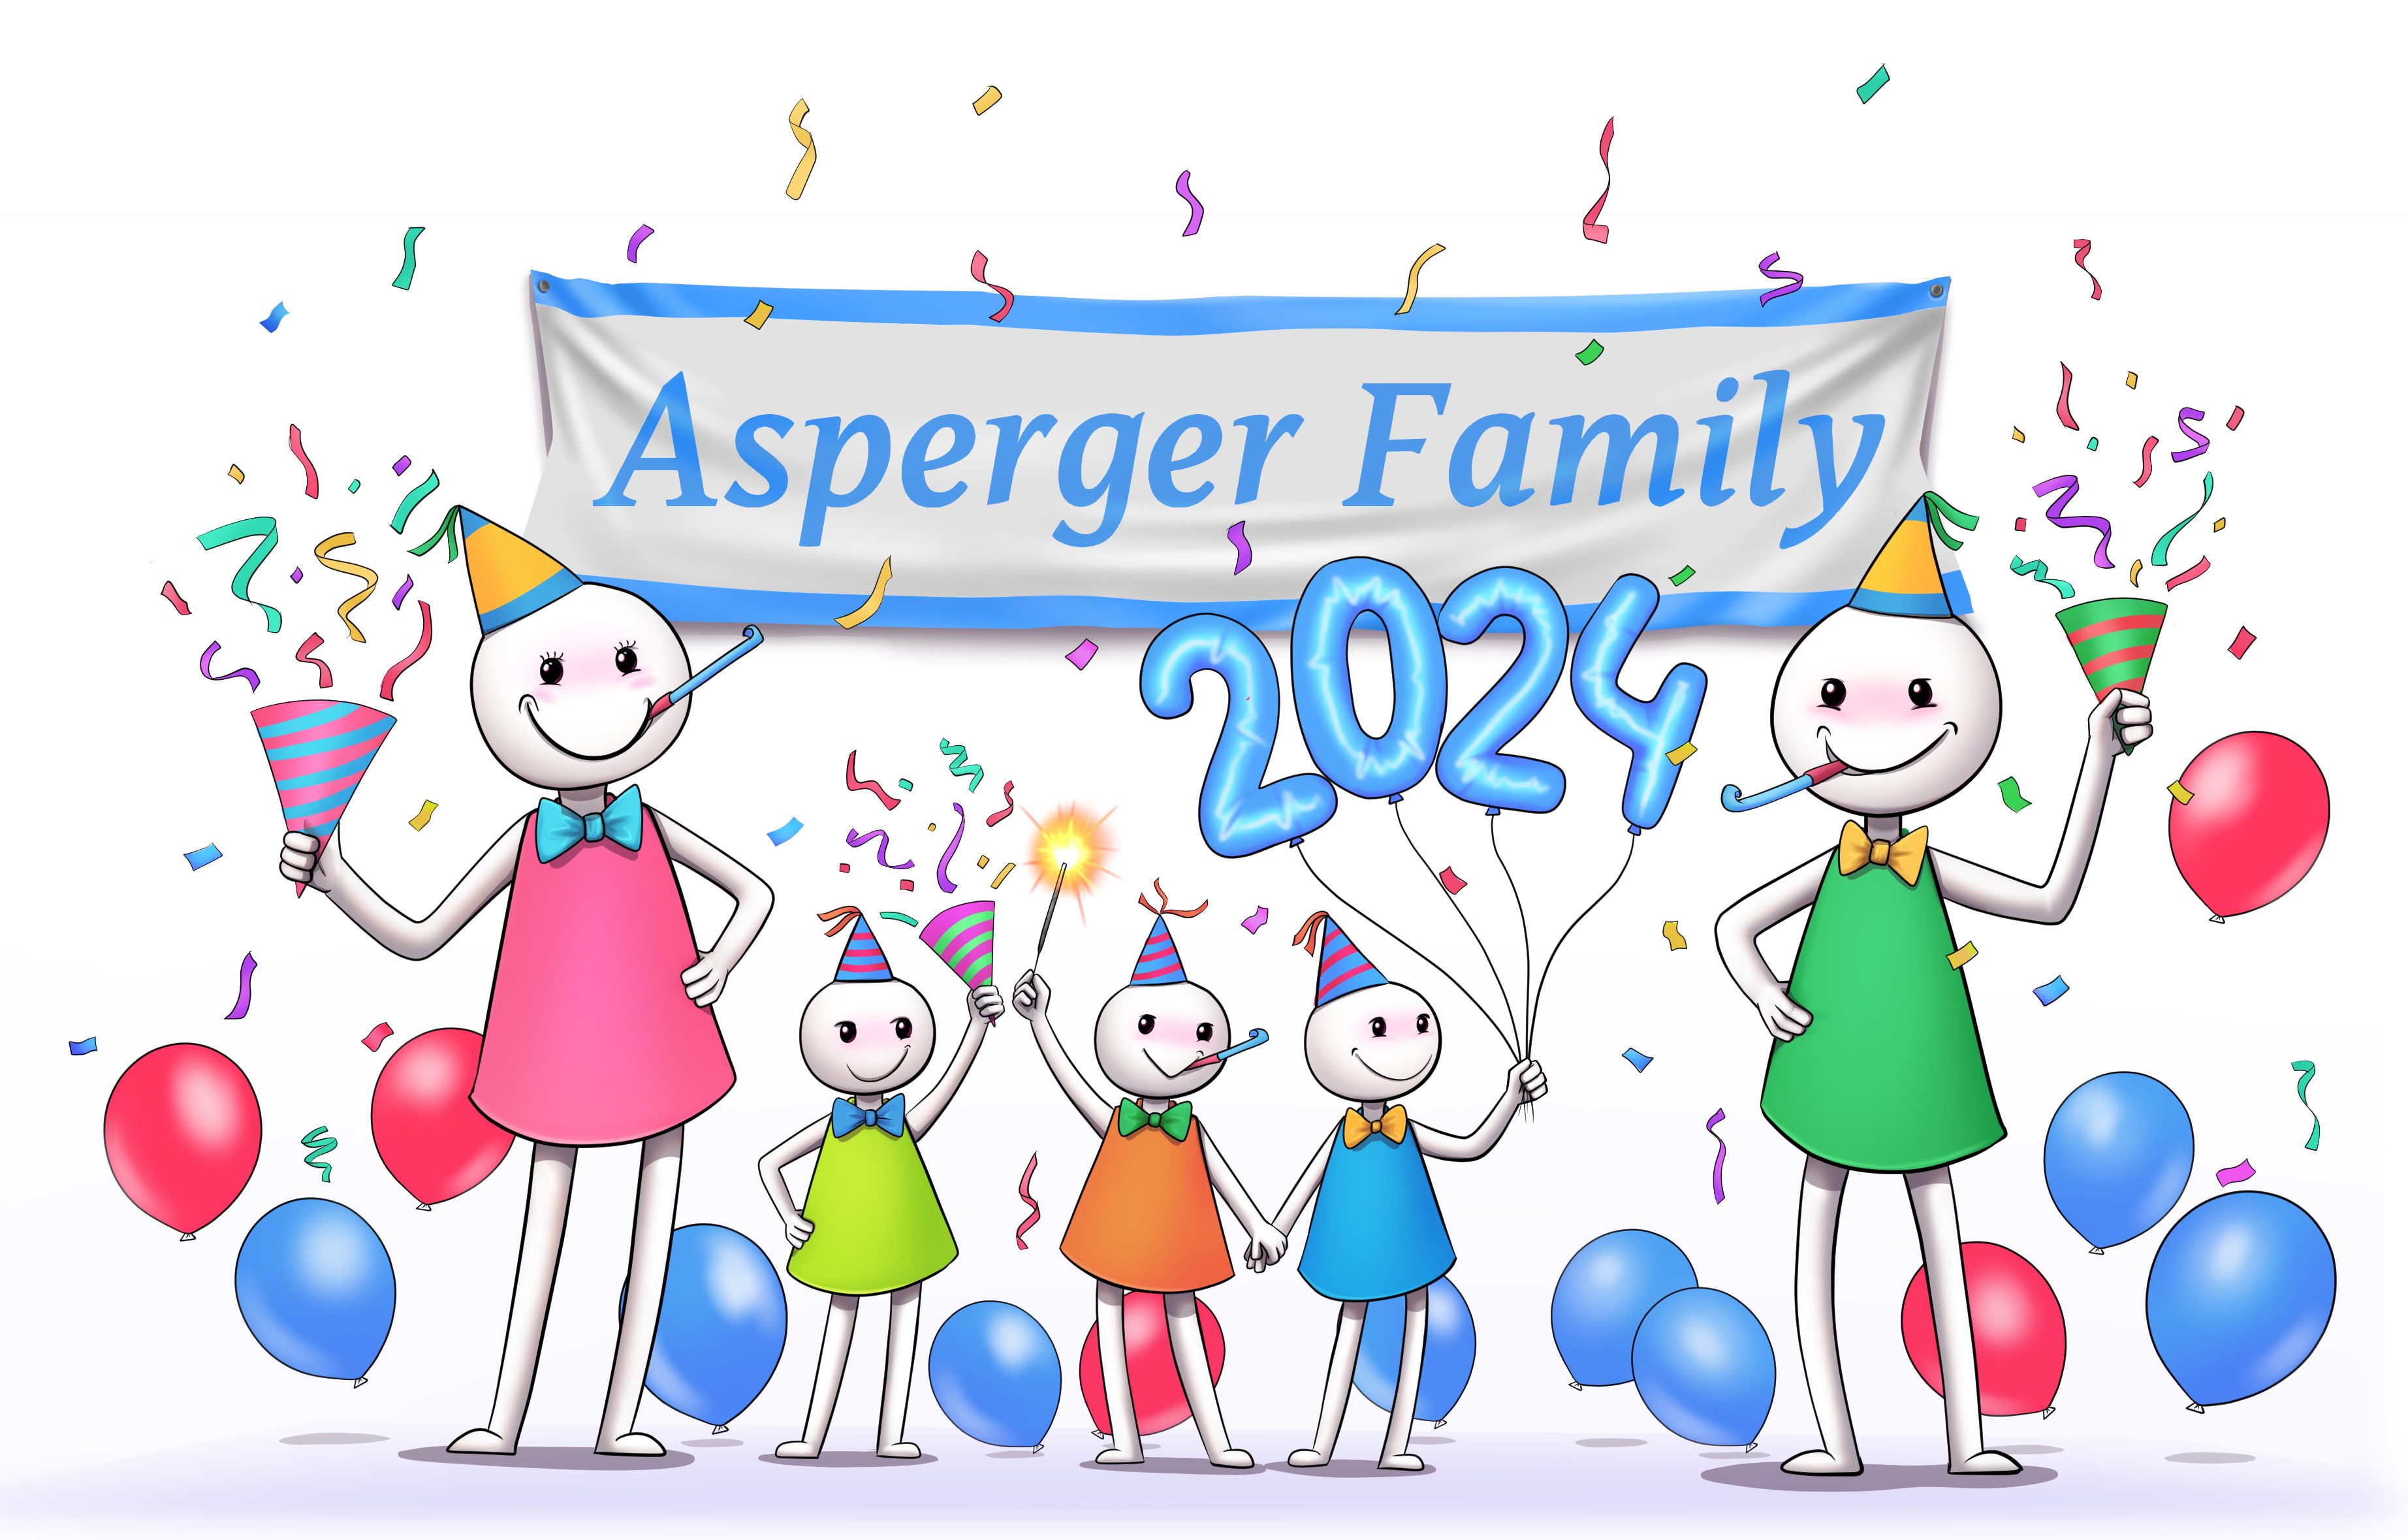 Asperger Family